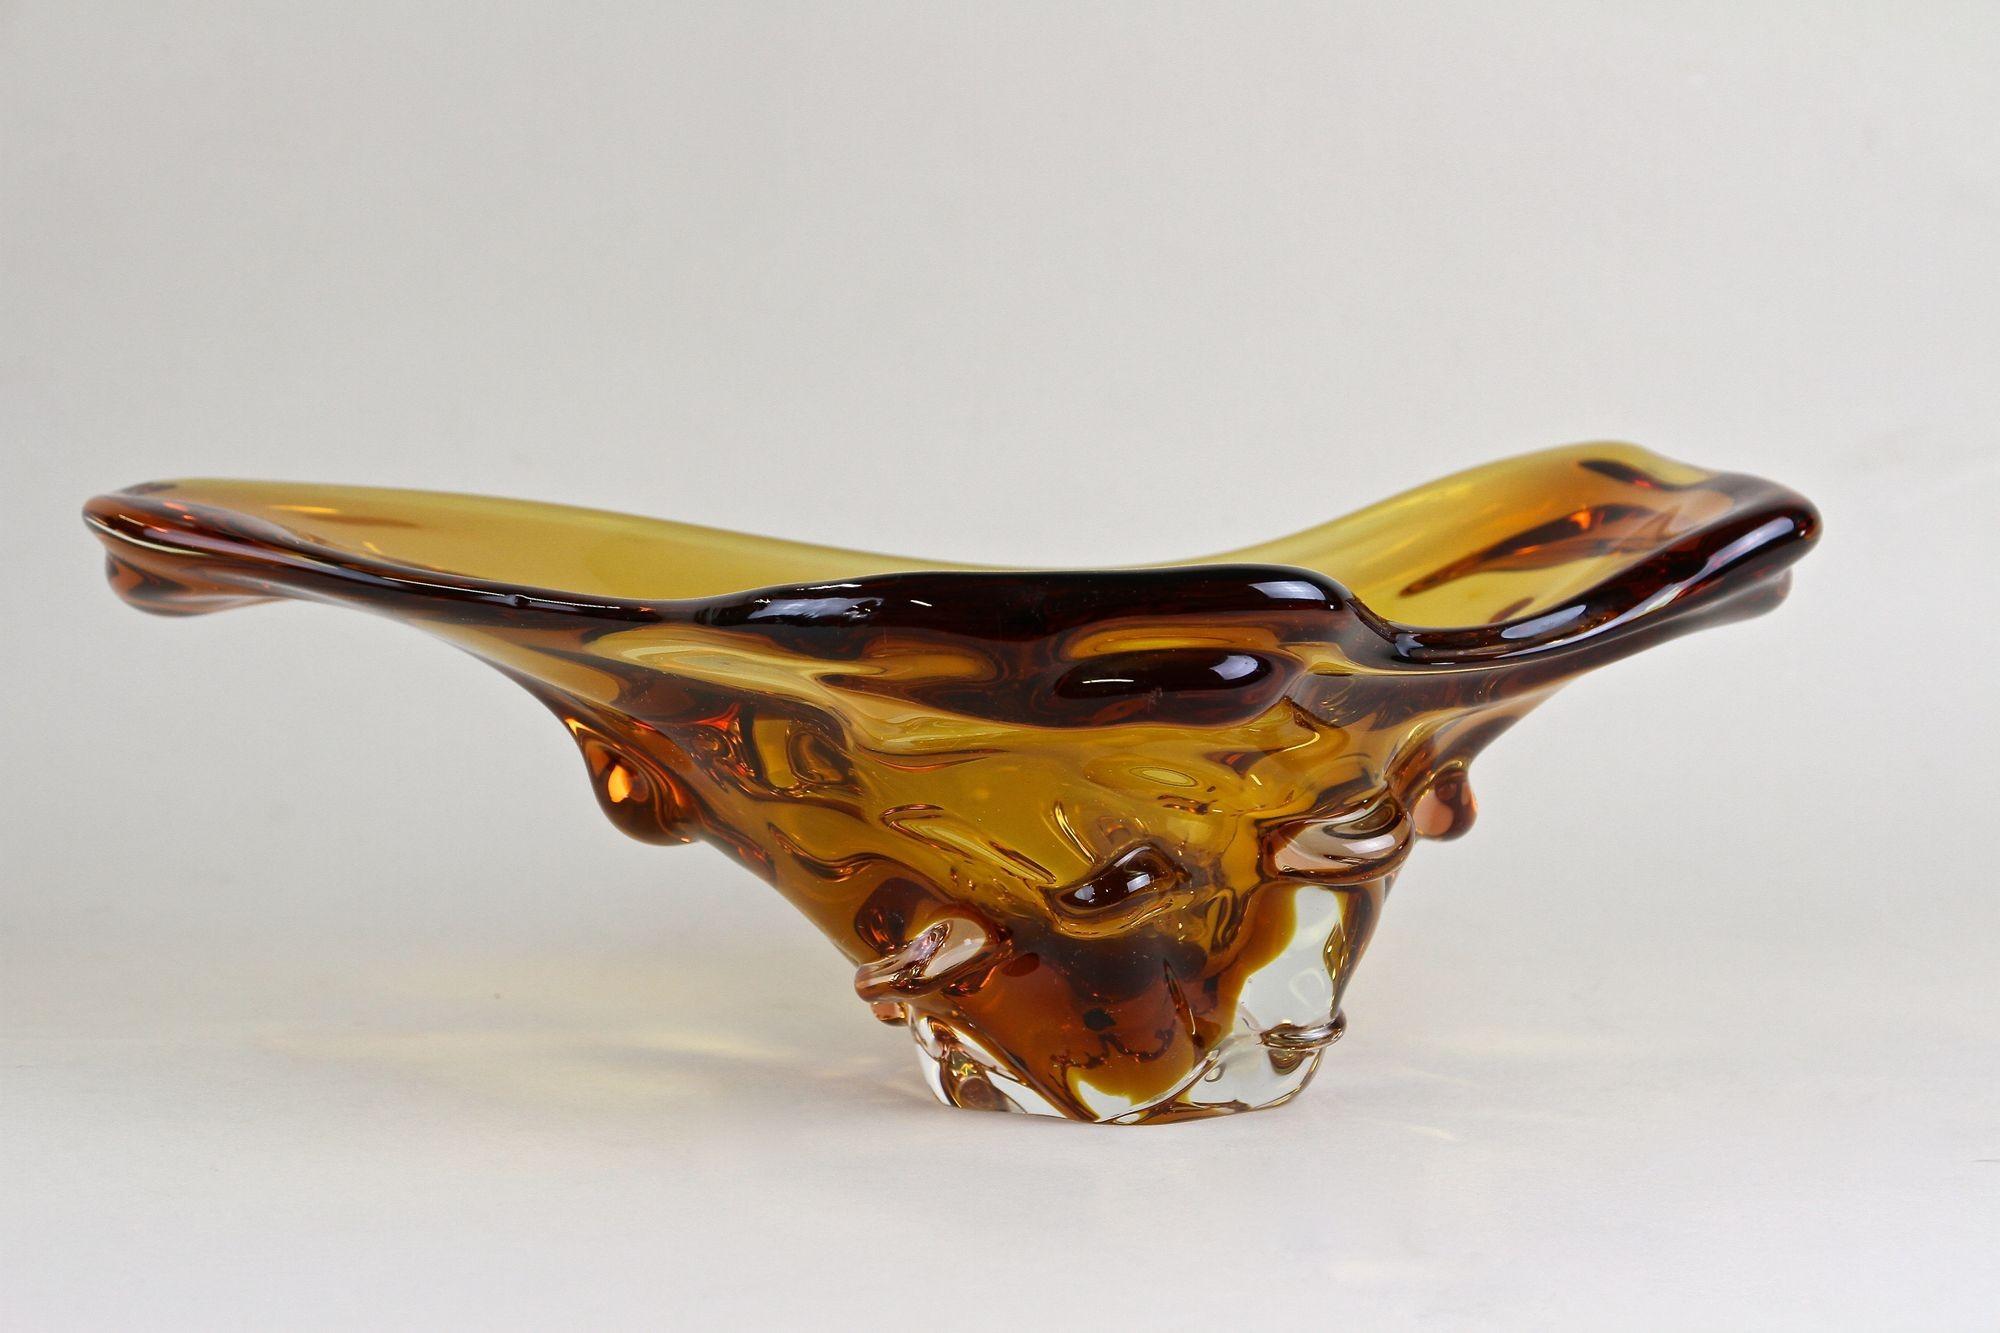 Extraordinaire coupe en verre de Murano sortant des célèbres ateliers d'Italie et datant de la période autour de 1960/70. Coloré dans un magnifique ton ambré/brun, ce bol en verre contemporain de forme très inhabituelle impressionne par son design